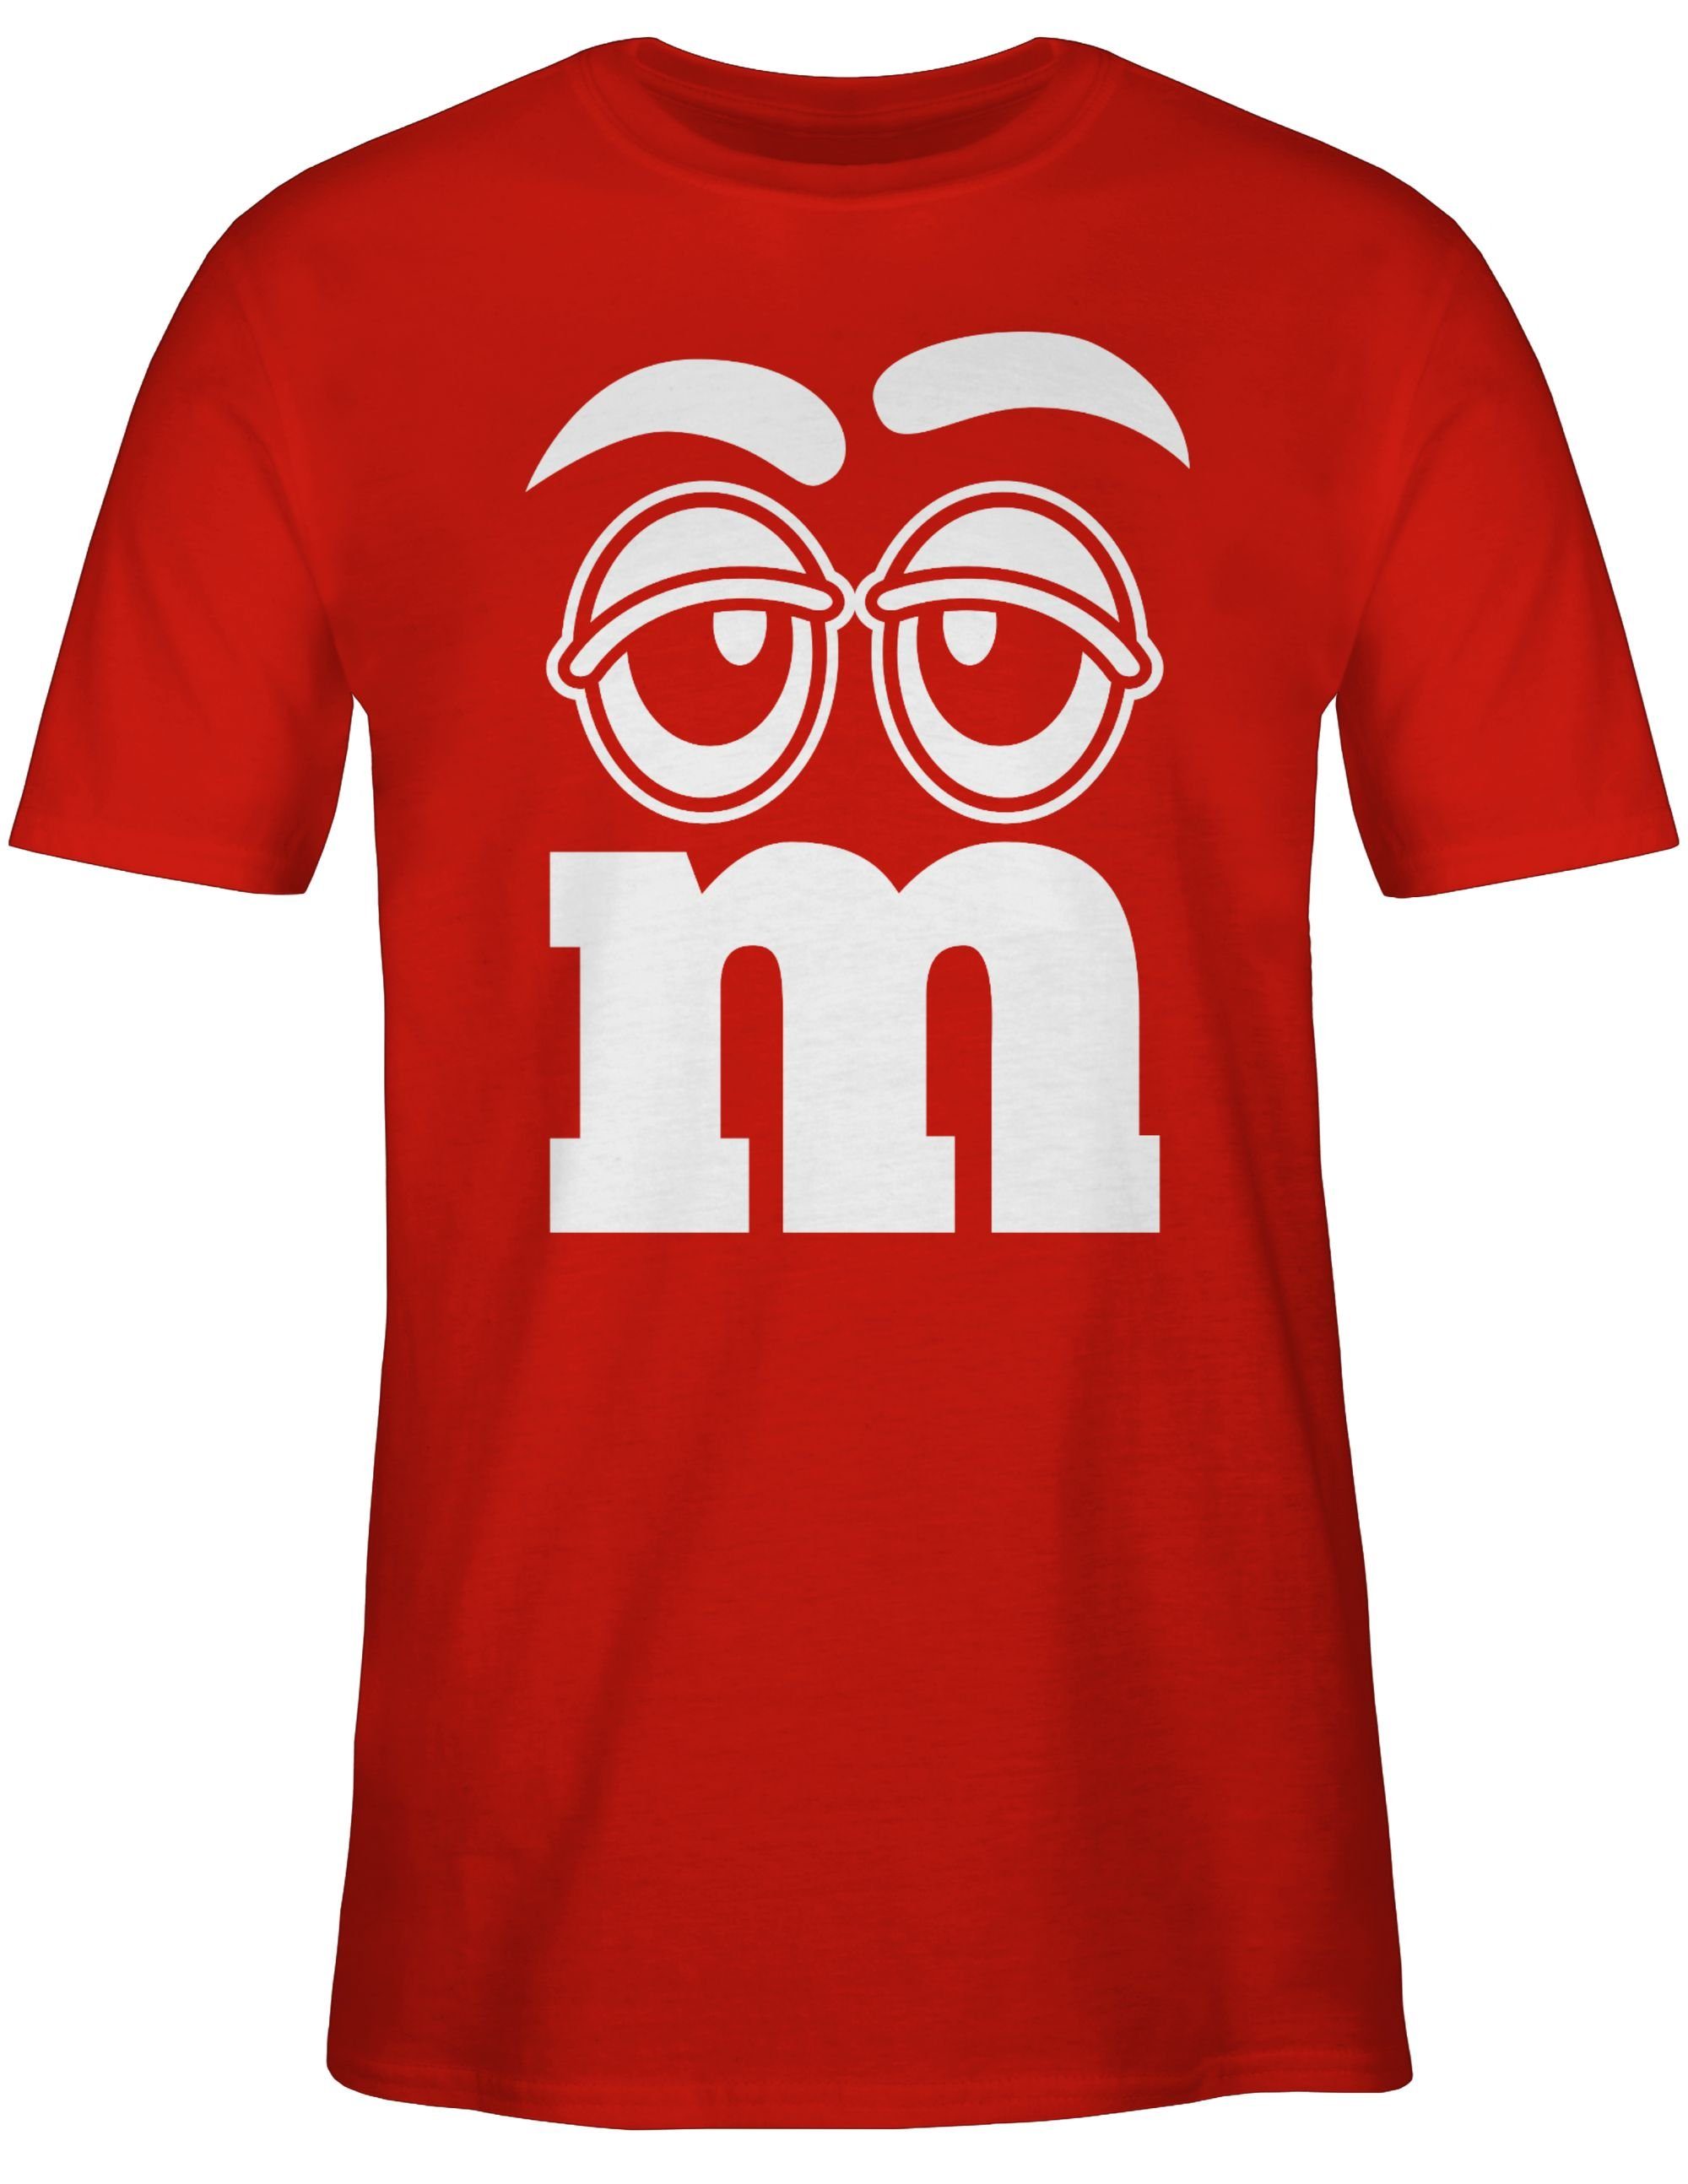 Shirtracer & Karneval Fasching Gruppen Aufdruck Gesicht Faschingskostüm 02 T-Shirt M&M Rot